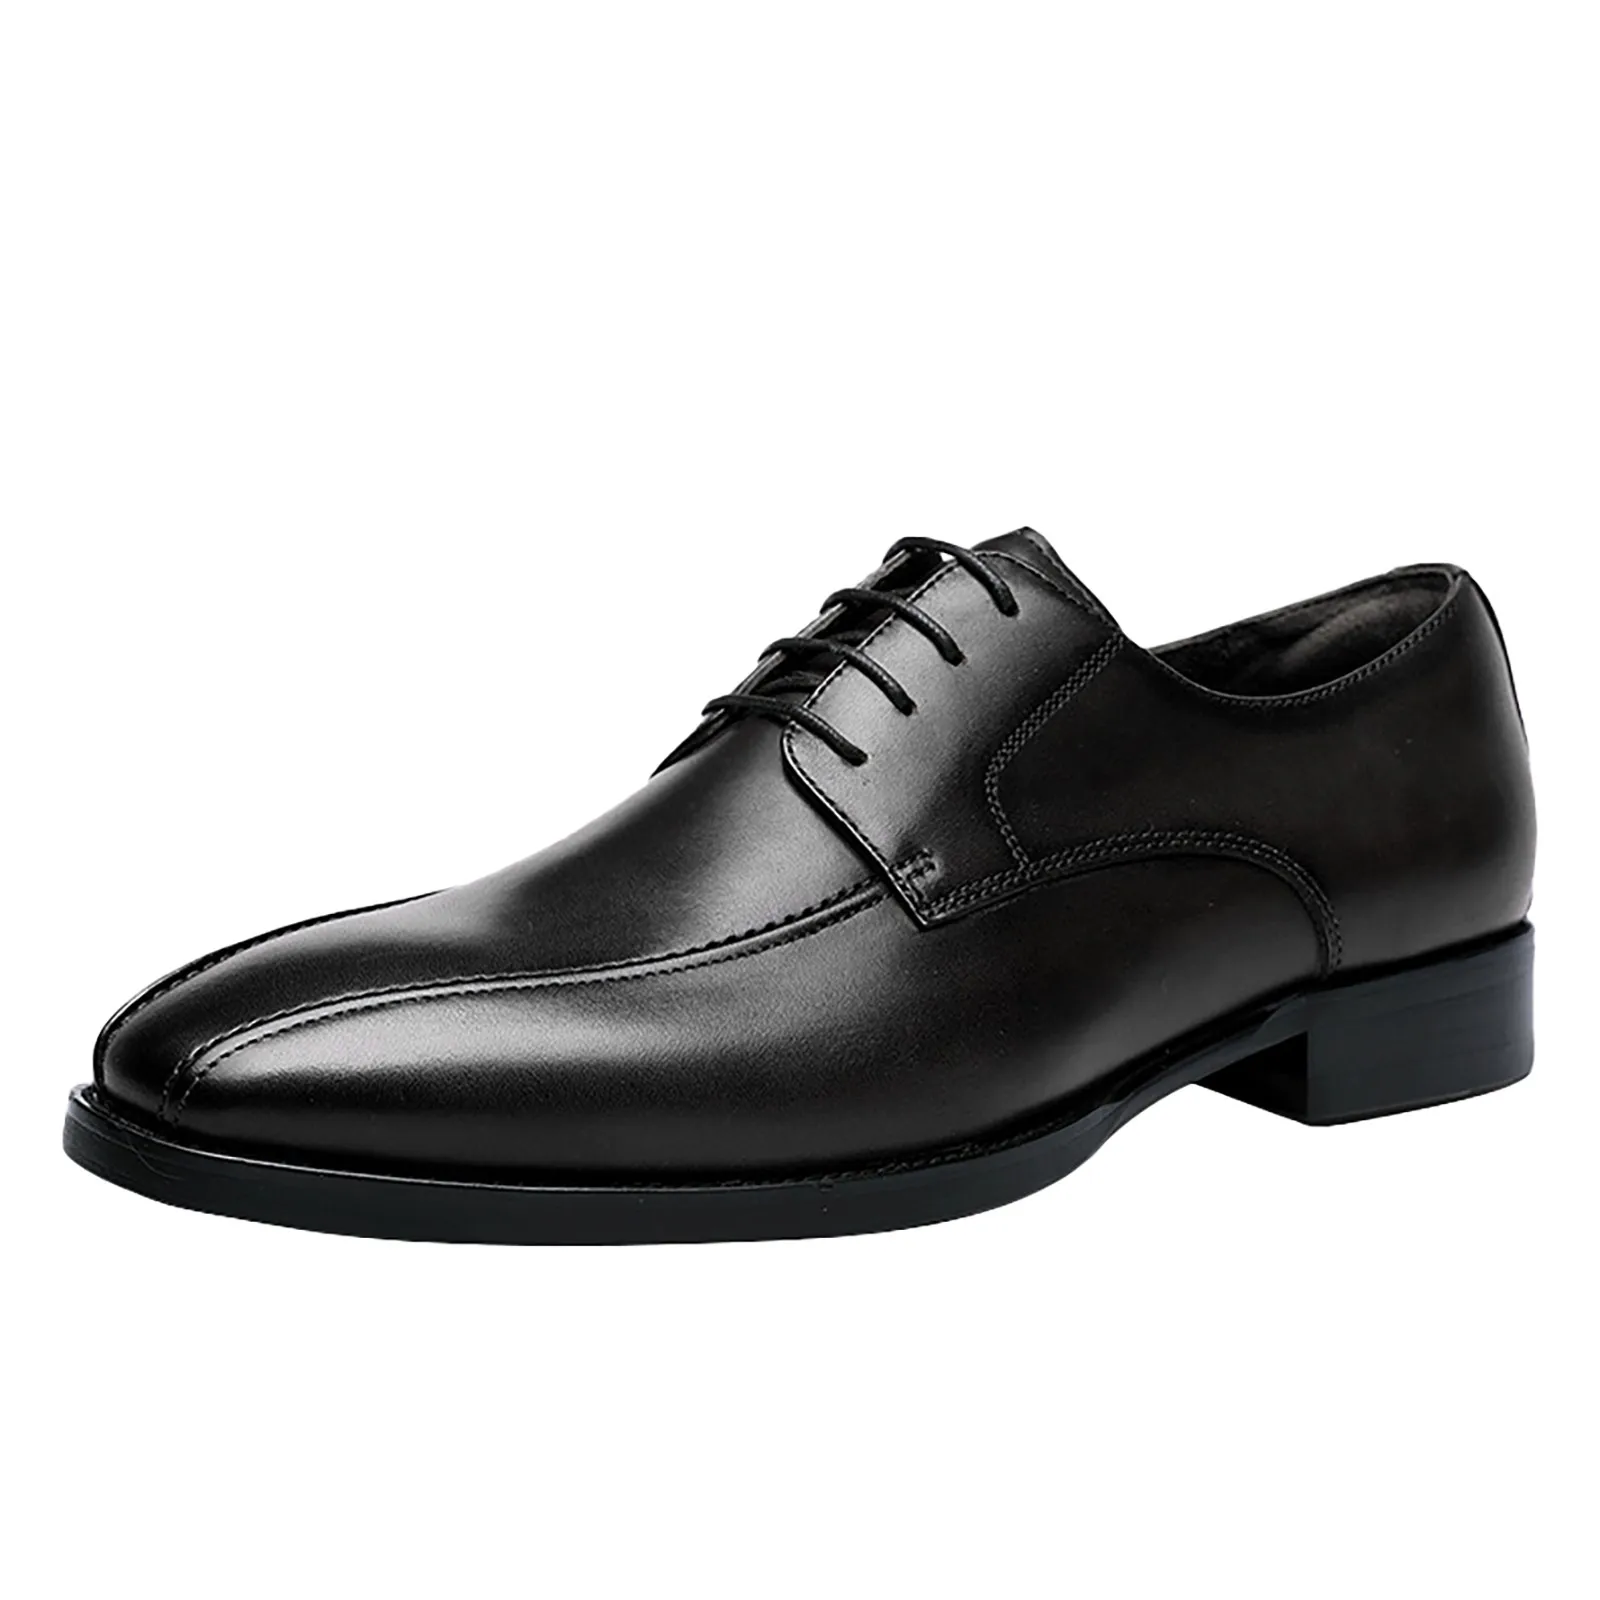 Classic Business Men Dress Shoes